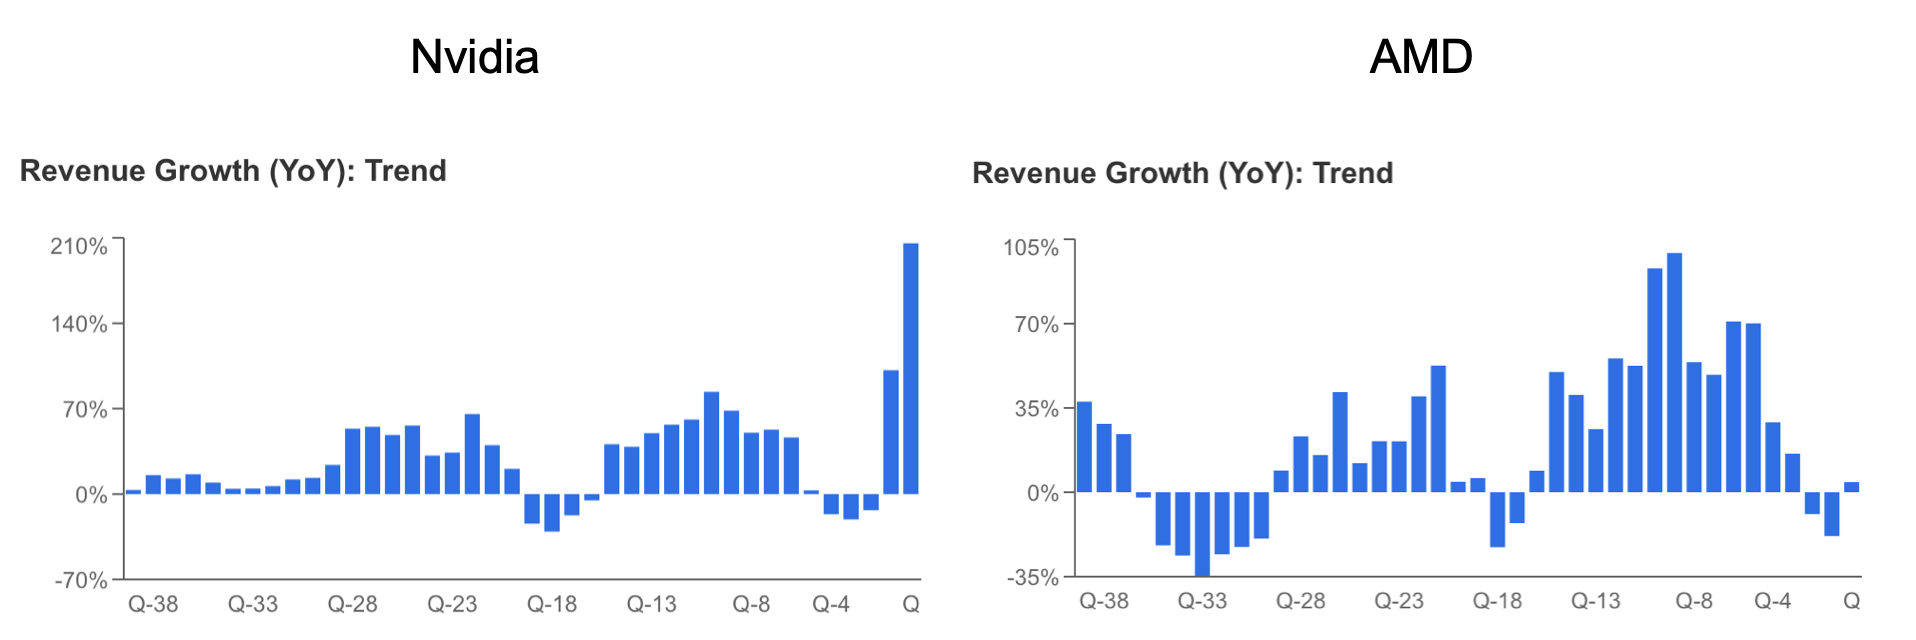 AMD Vs. Nvidia: Revenue Growth